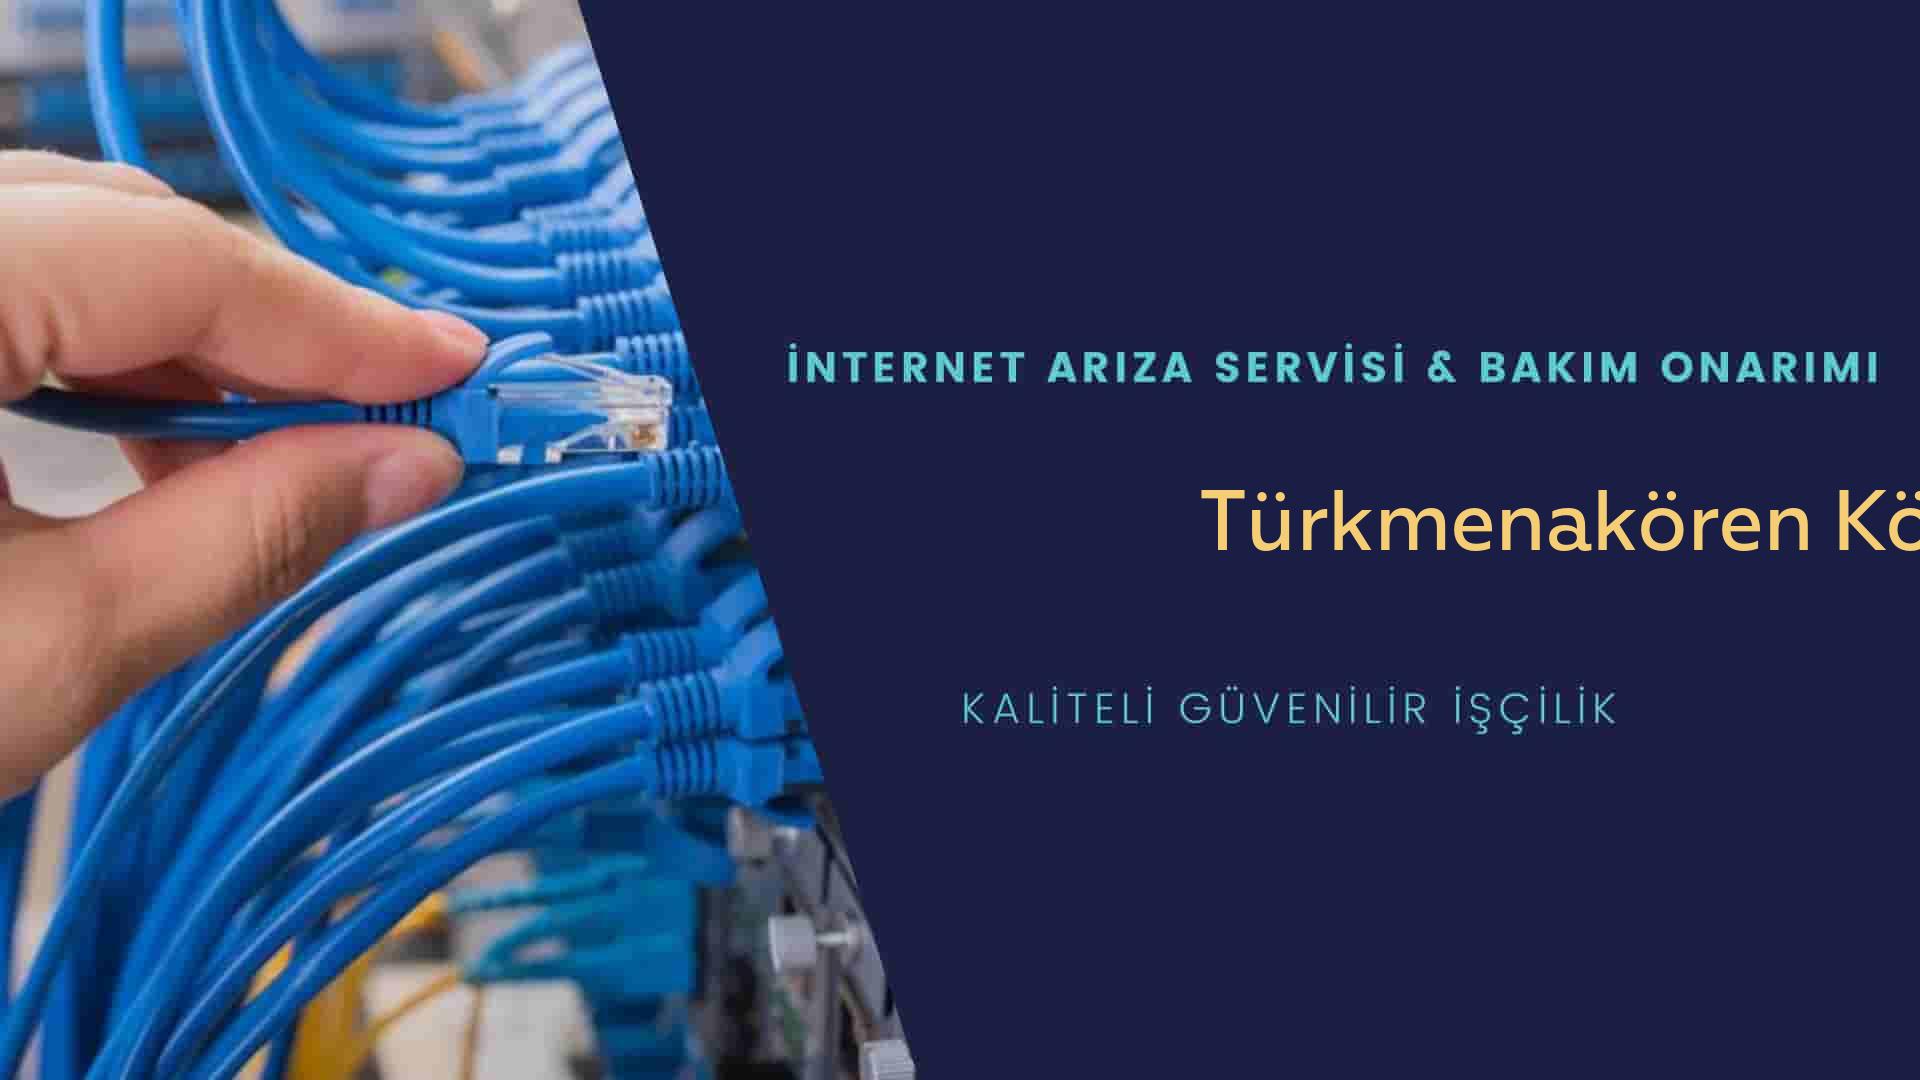 Türkmenakören Köyü internet kablosu çekimi yapan yerler veya elektrikçiler mi? arıyorsunuz doğru yerdesiniz o zaman sizlere 7/24 yardımcı olacak profesyonel ustalarımız bir telefon kadar yakındır size.